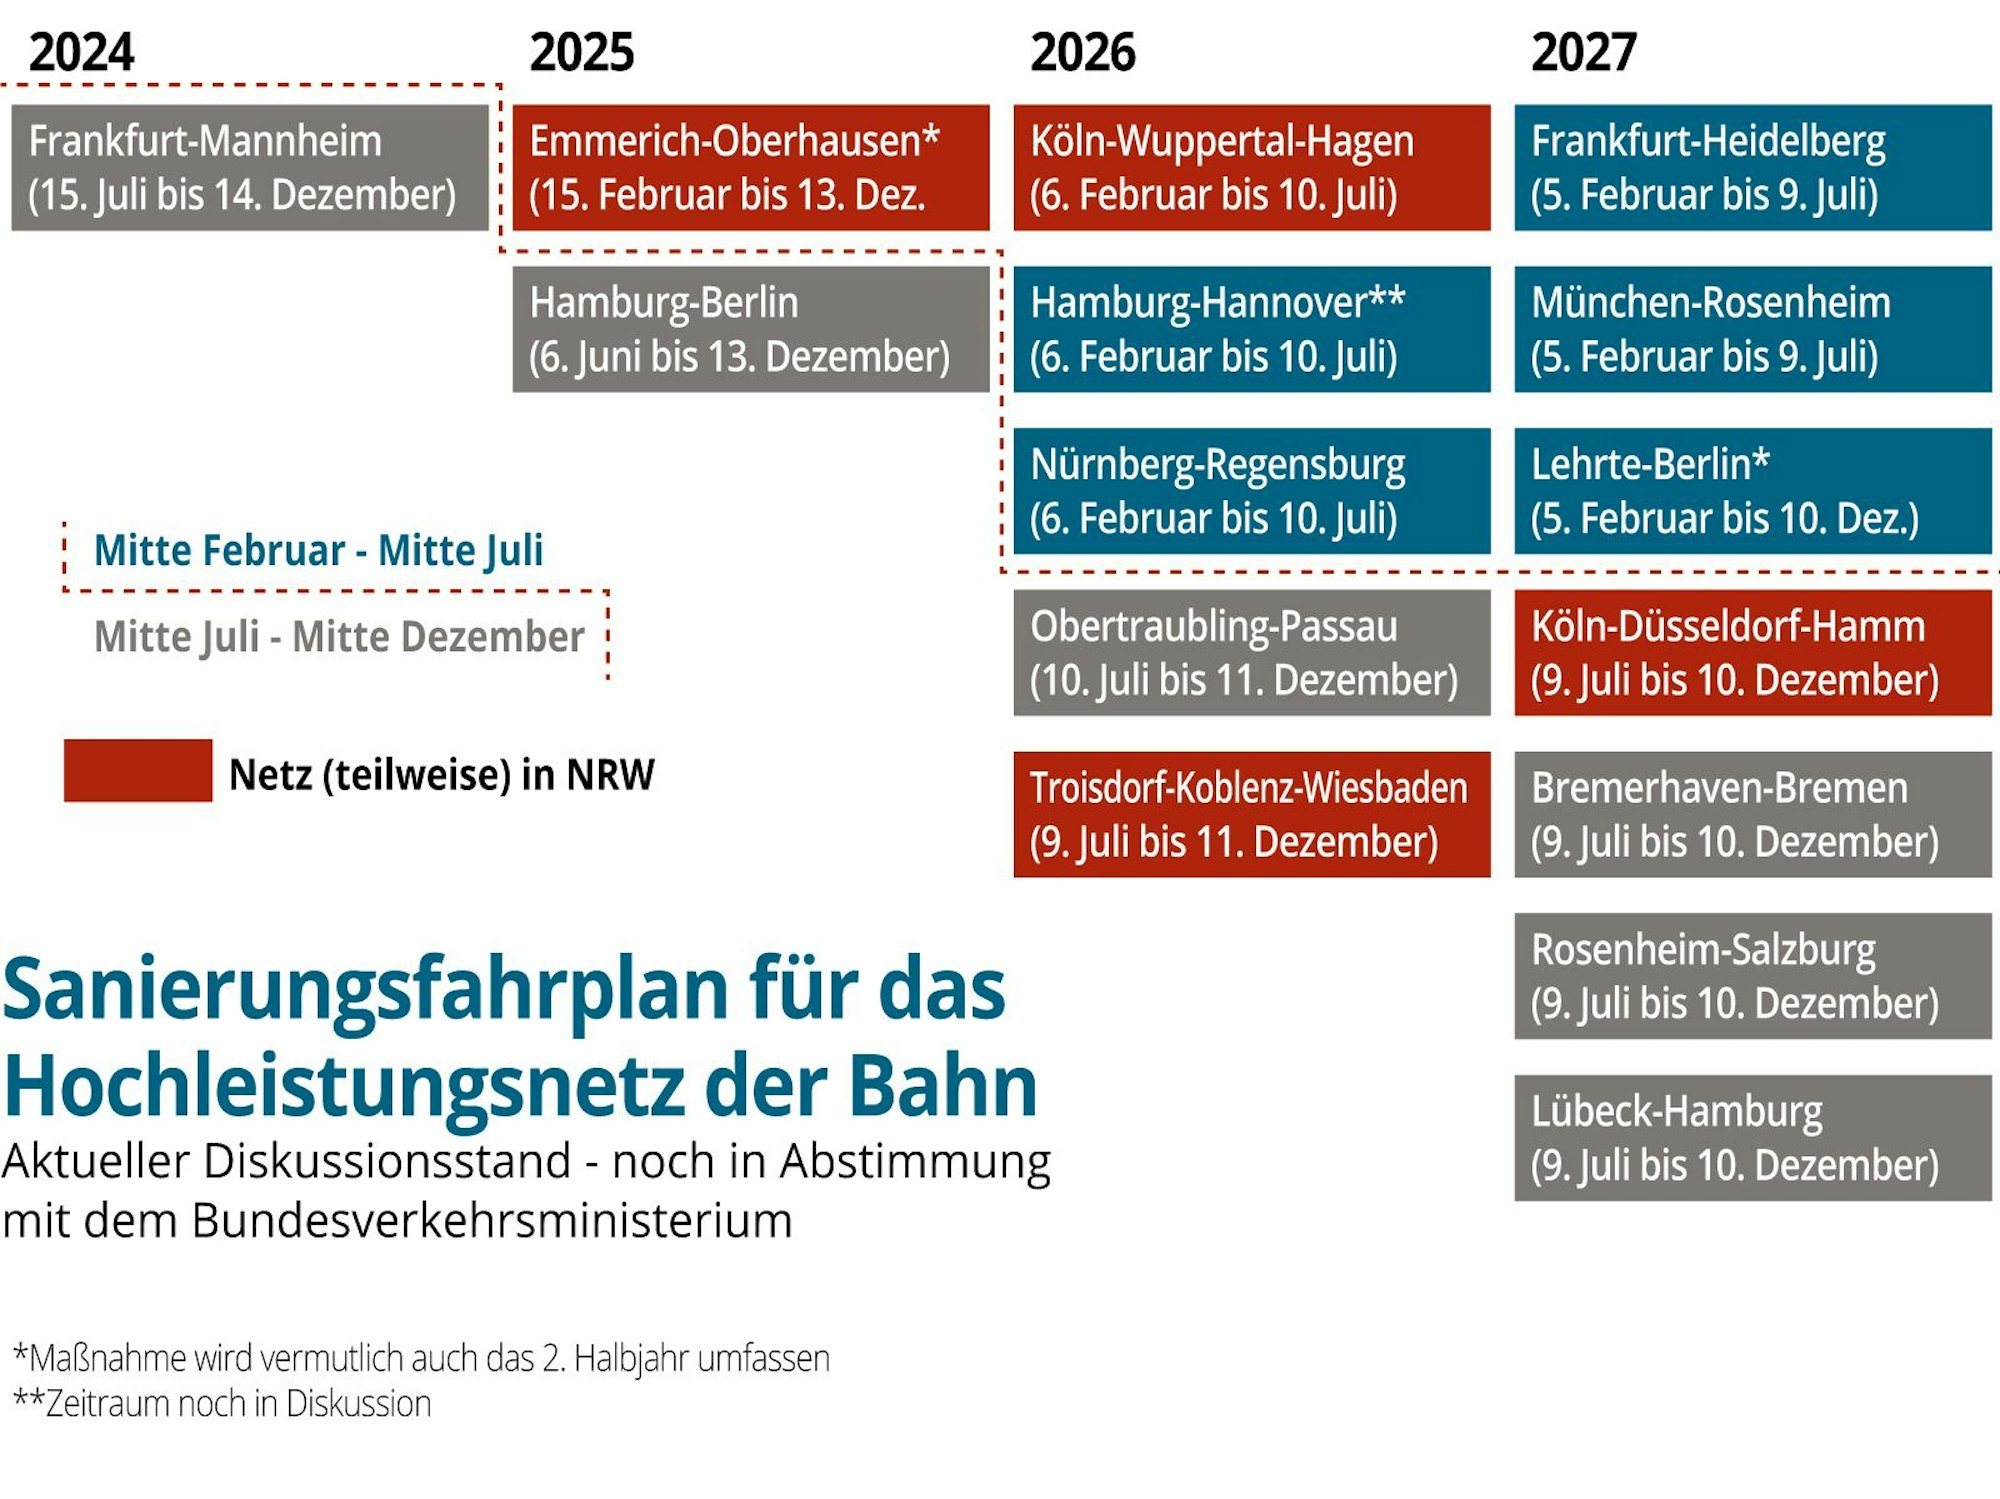 Die Sanierungspläne für das Hochleistungsnetz der Deutschen Bahn